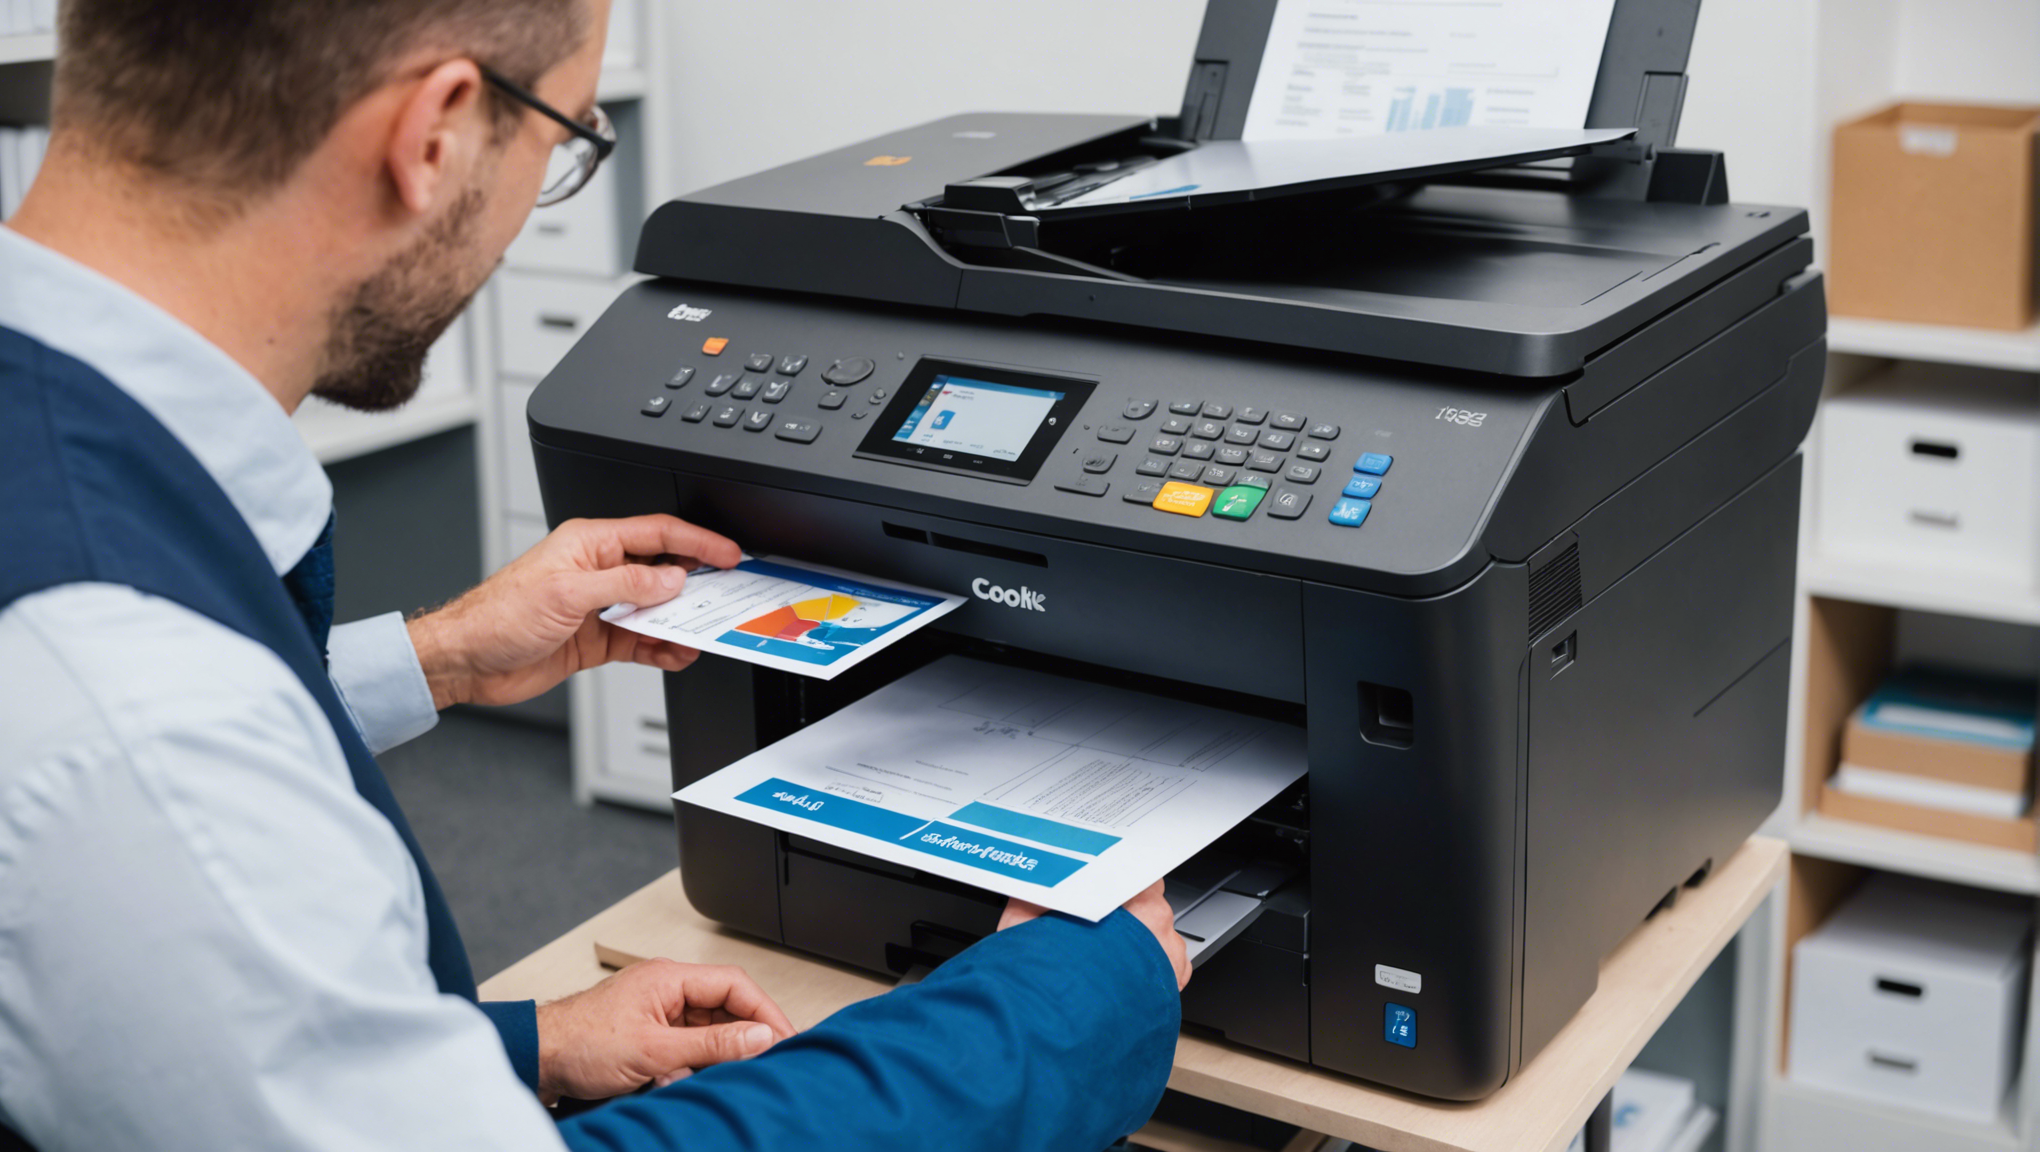 découvrez des imprimantes professionnelles abordables et profitez de services d'entretien de qualité pour votre parc d'imprimantes professionnelles.